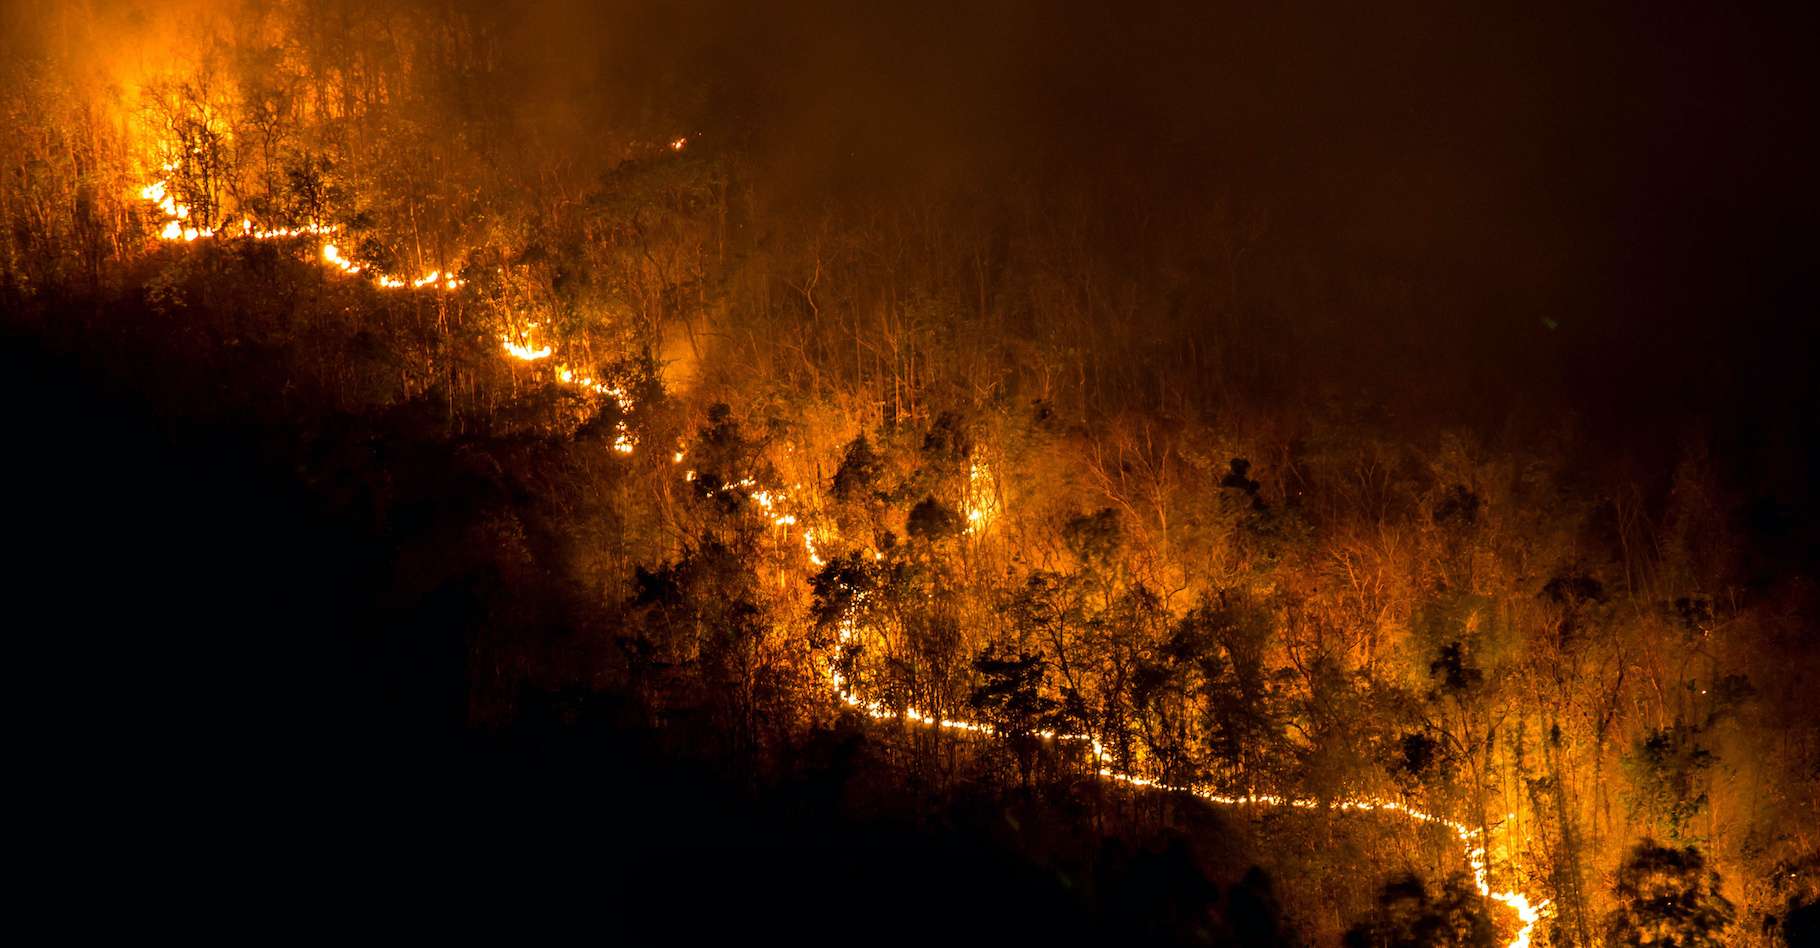 Mégafeux : une étude pointe notre gestion des forêts et des incendies